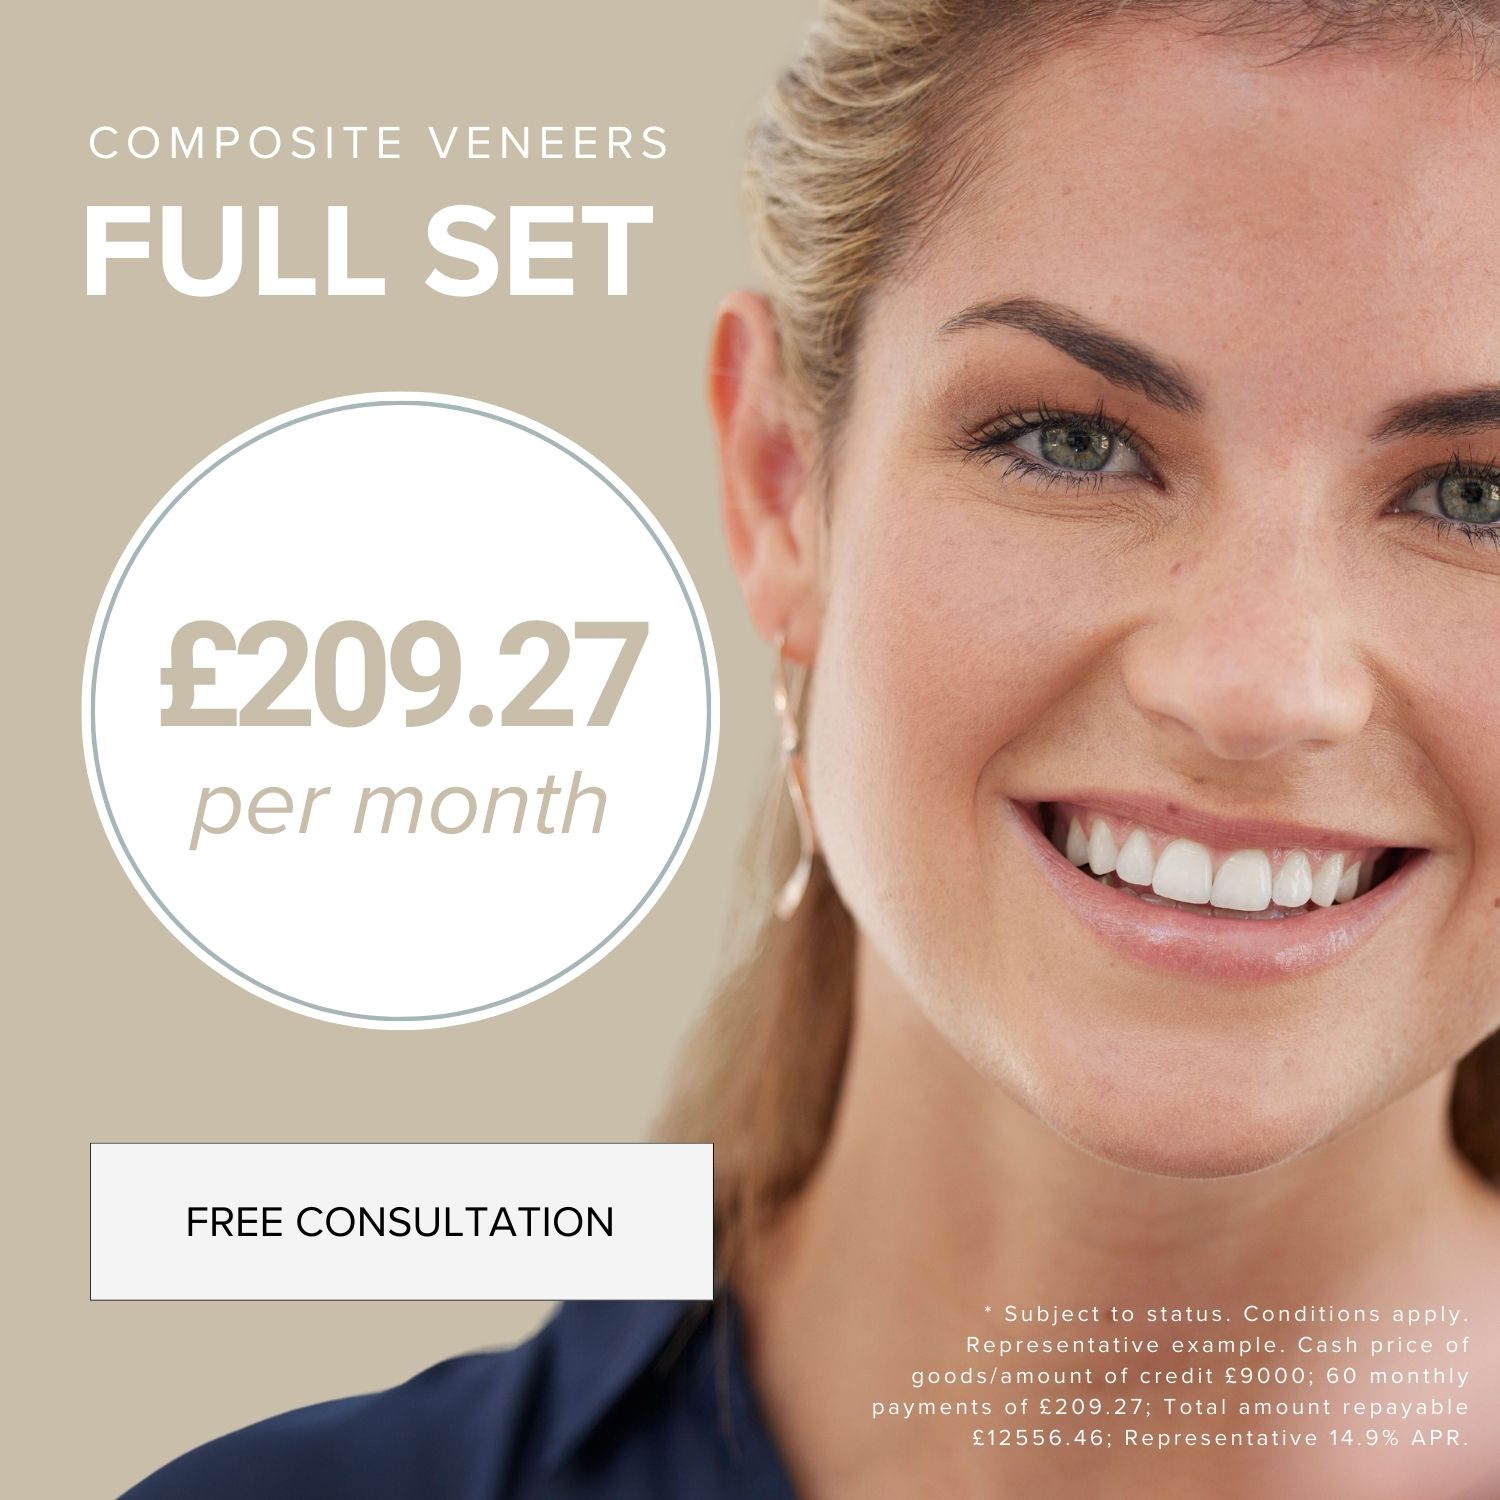 composite veneer full set offer image